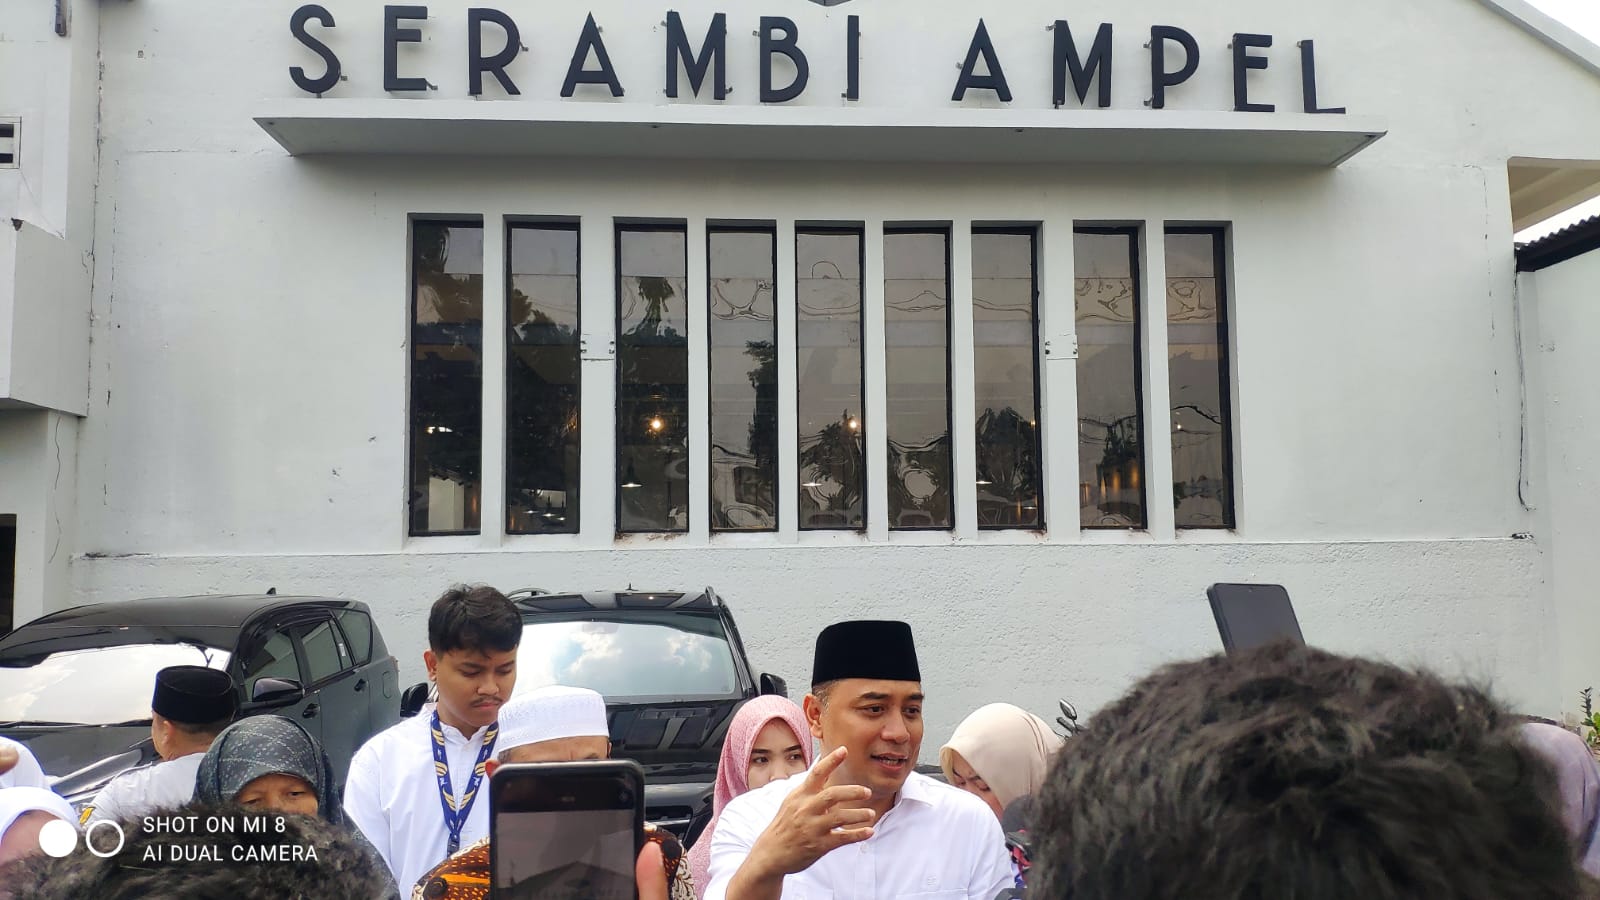 Walikota Surabaya Resmikan “Serambi Ampel” RPH Babi Pegirian Disulap Jadi Sentra Kuliner di Kawasan Wisata Religi